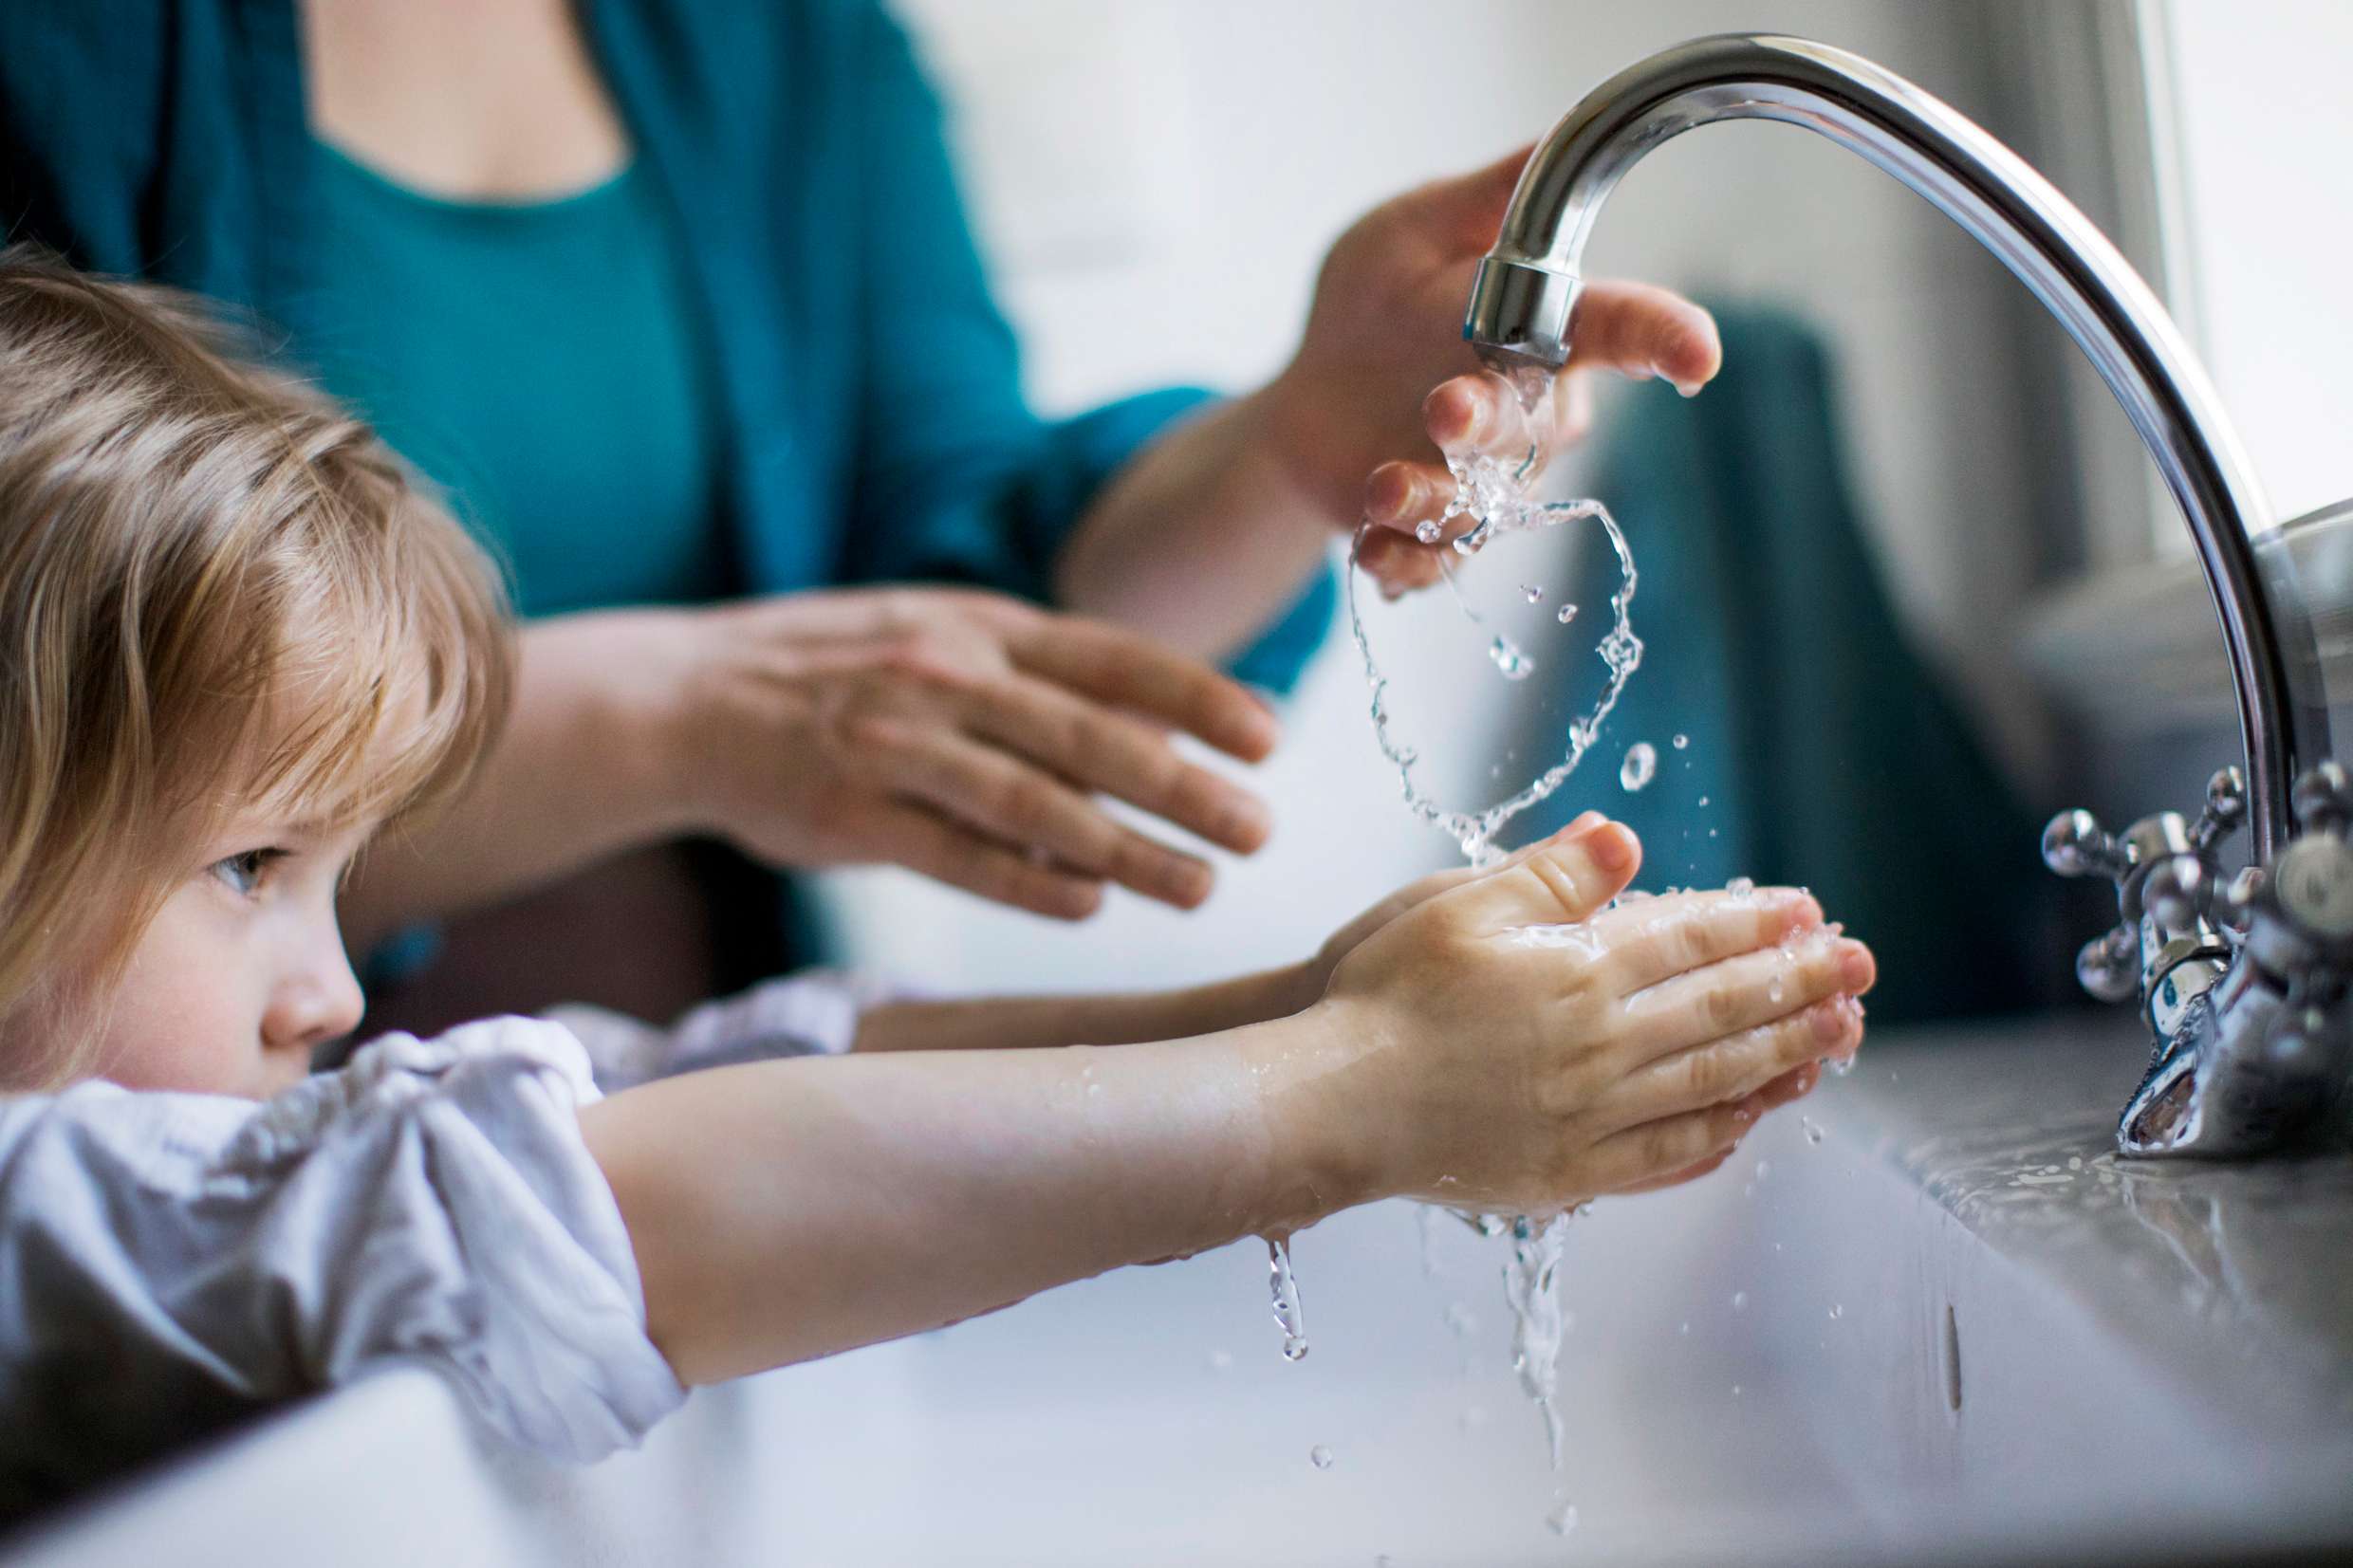 En liten flicka står bredvid en vuxen kvinna och tvättar händerna under kranen.